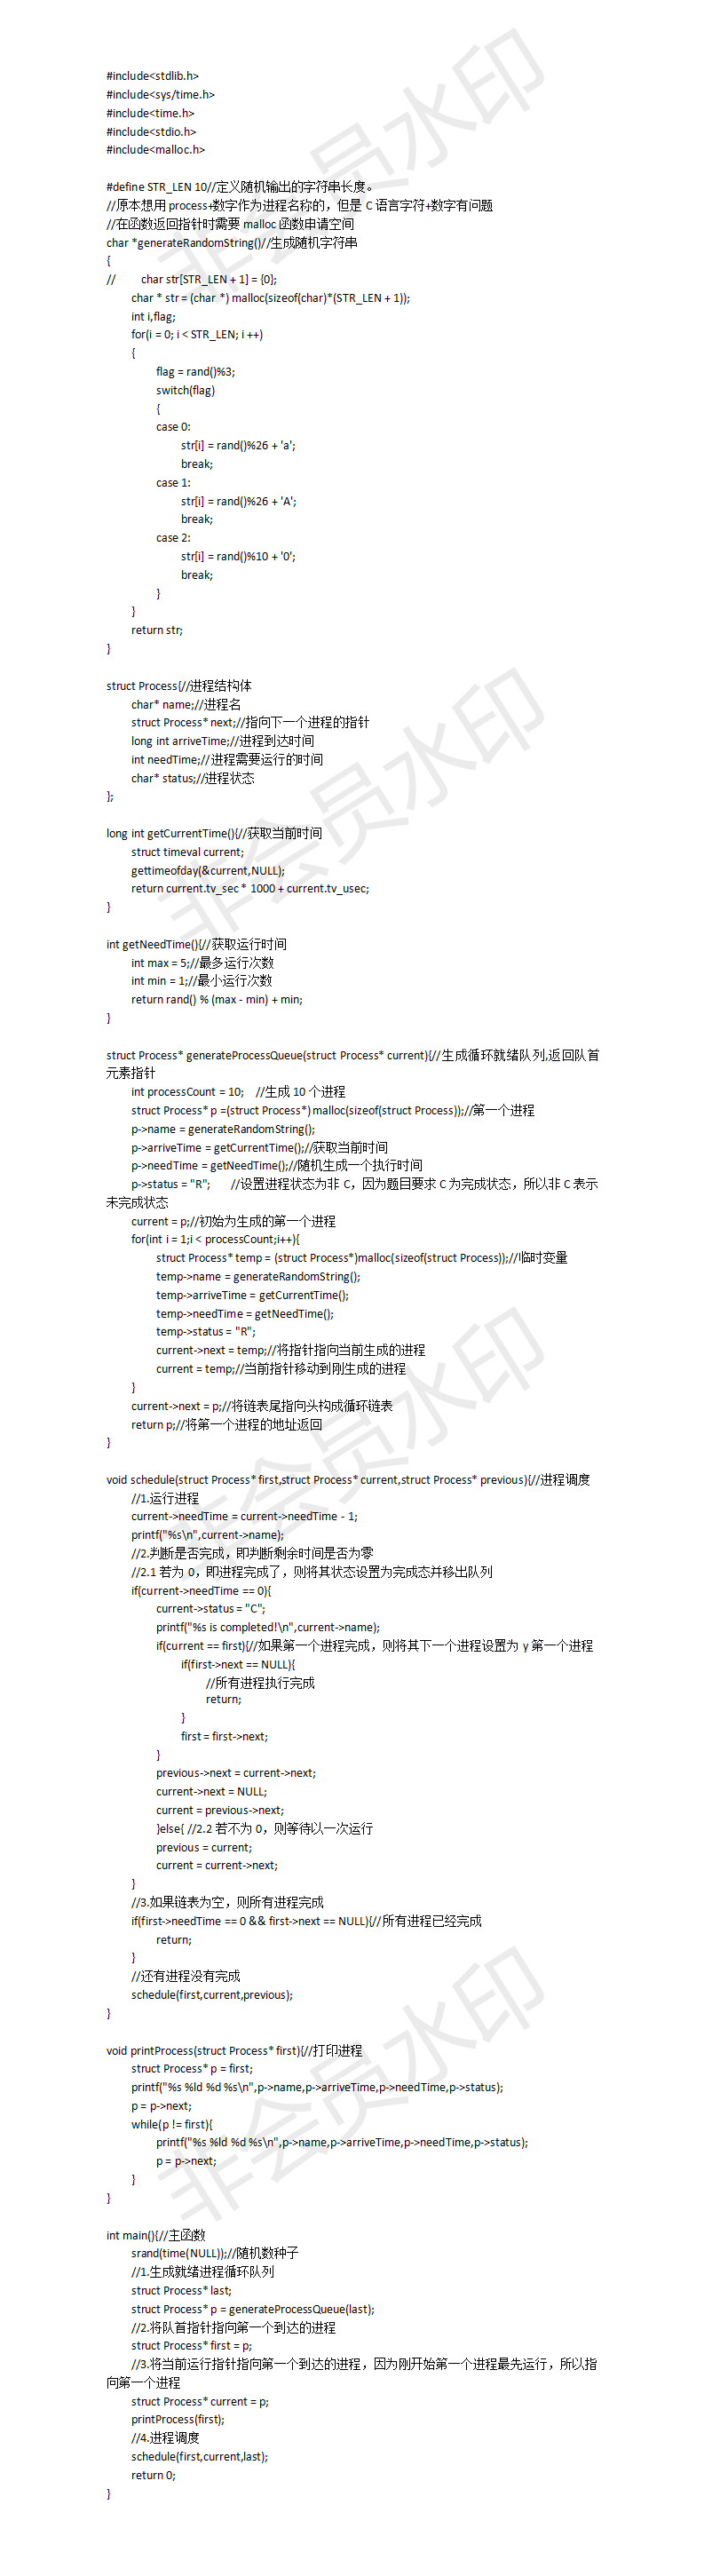 2019广州大学操作系统课程设计